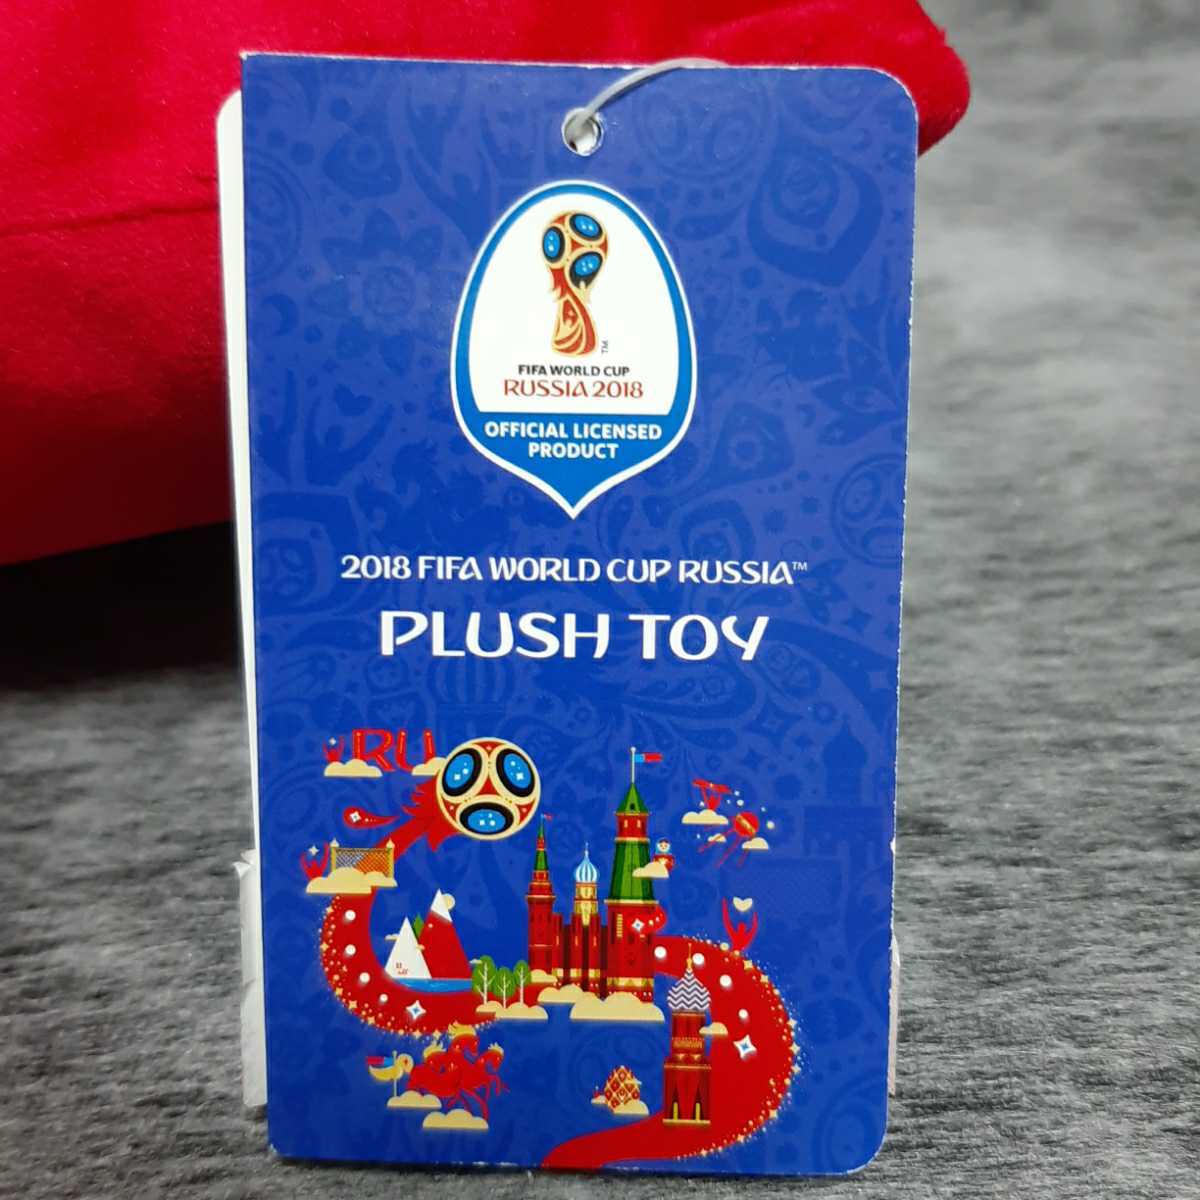 ザビワカ クッション赤 2018 FIFA WORLD CAP RUSSIA 未使用品の画像7